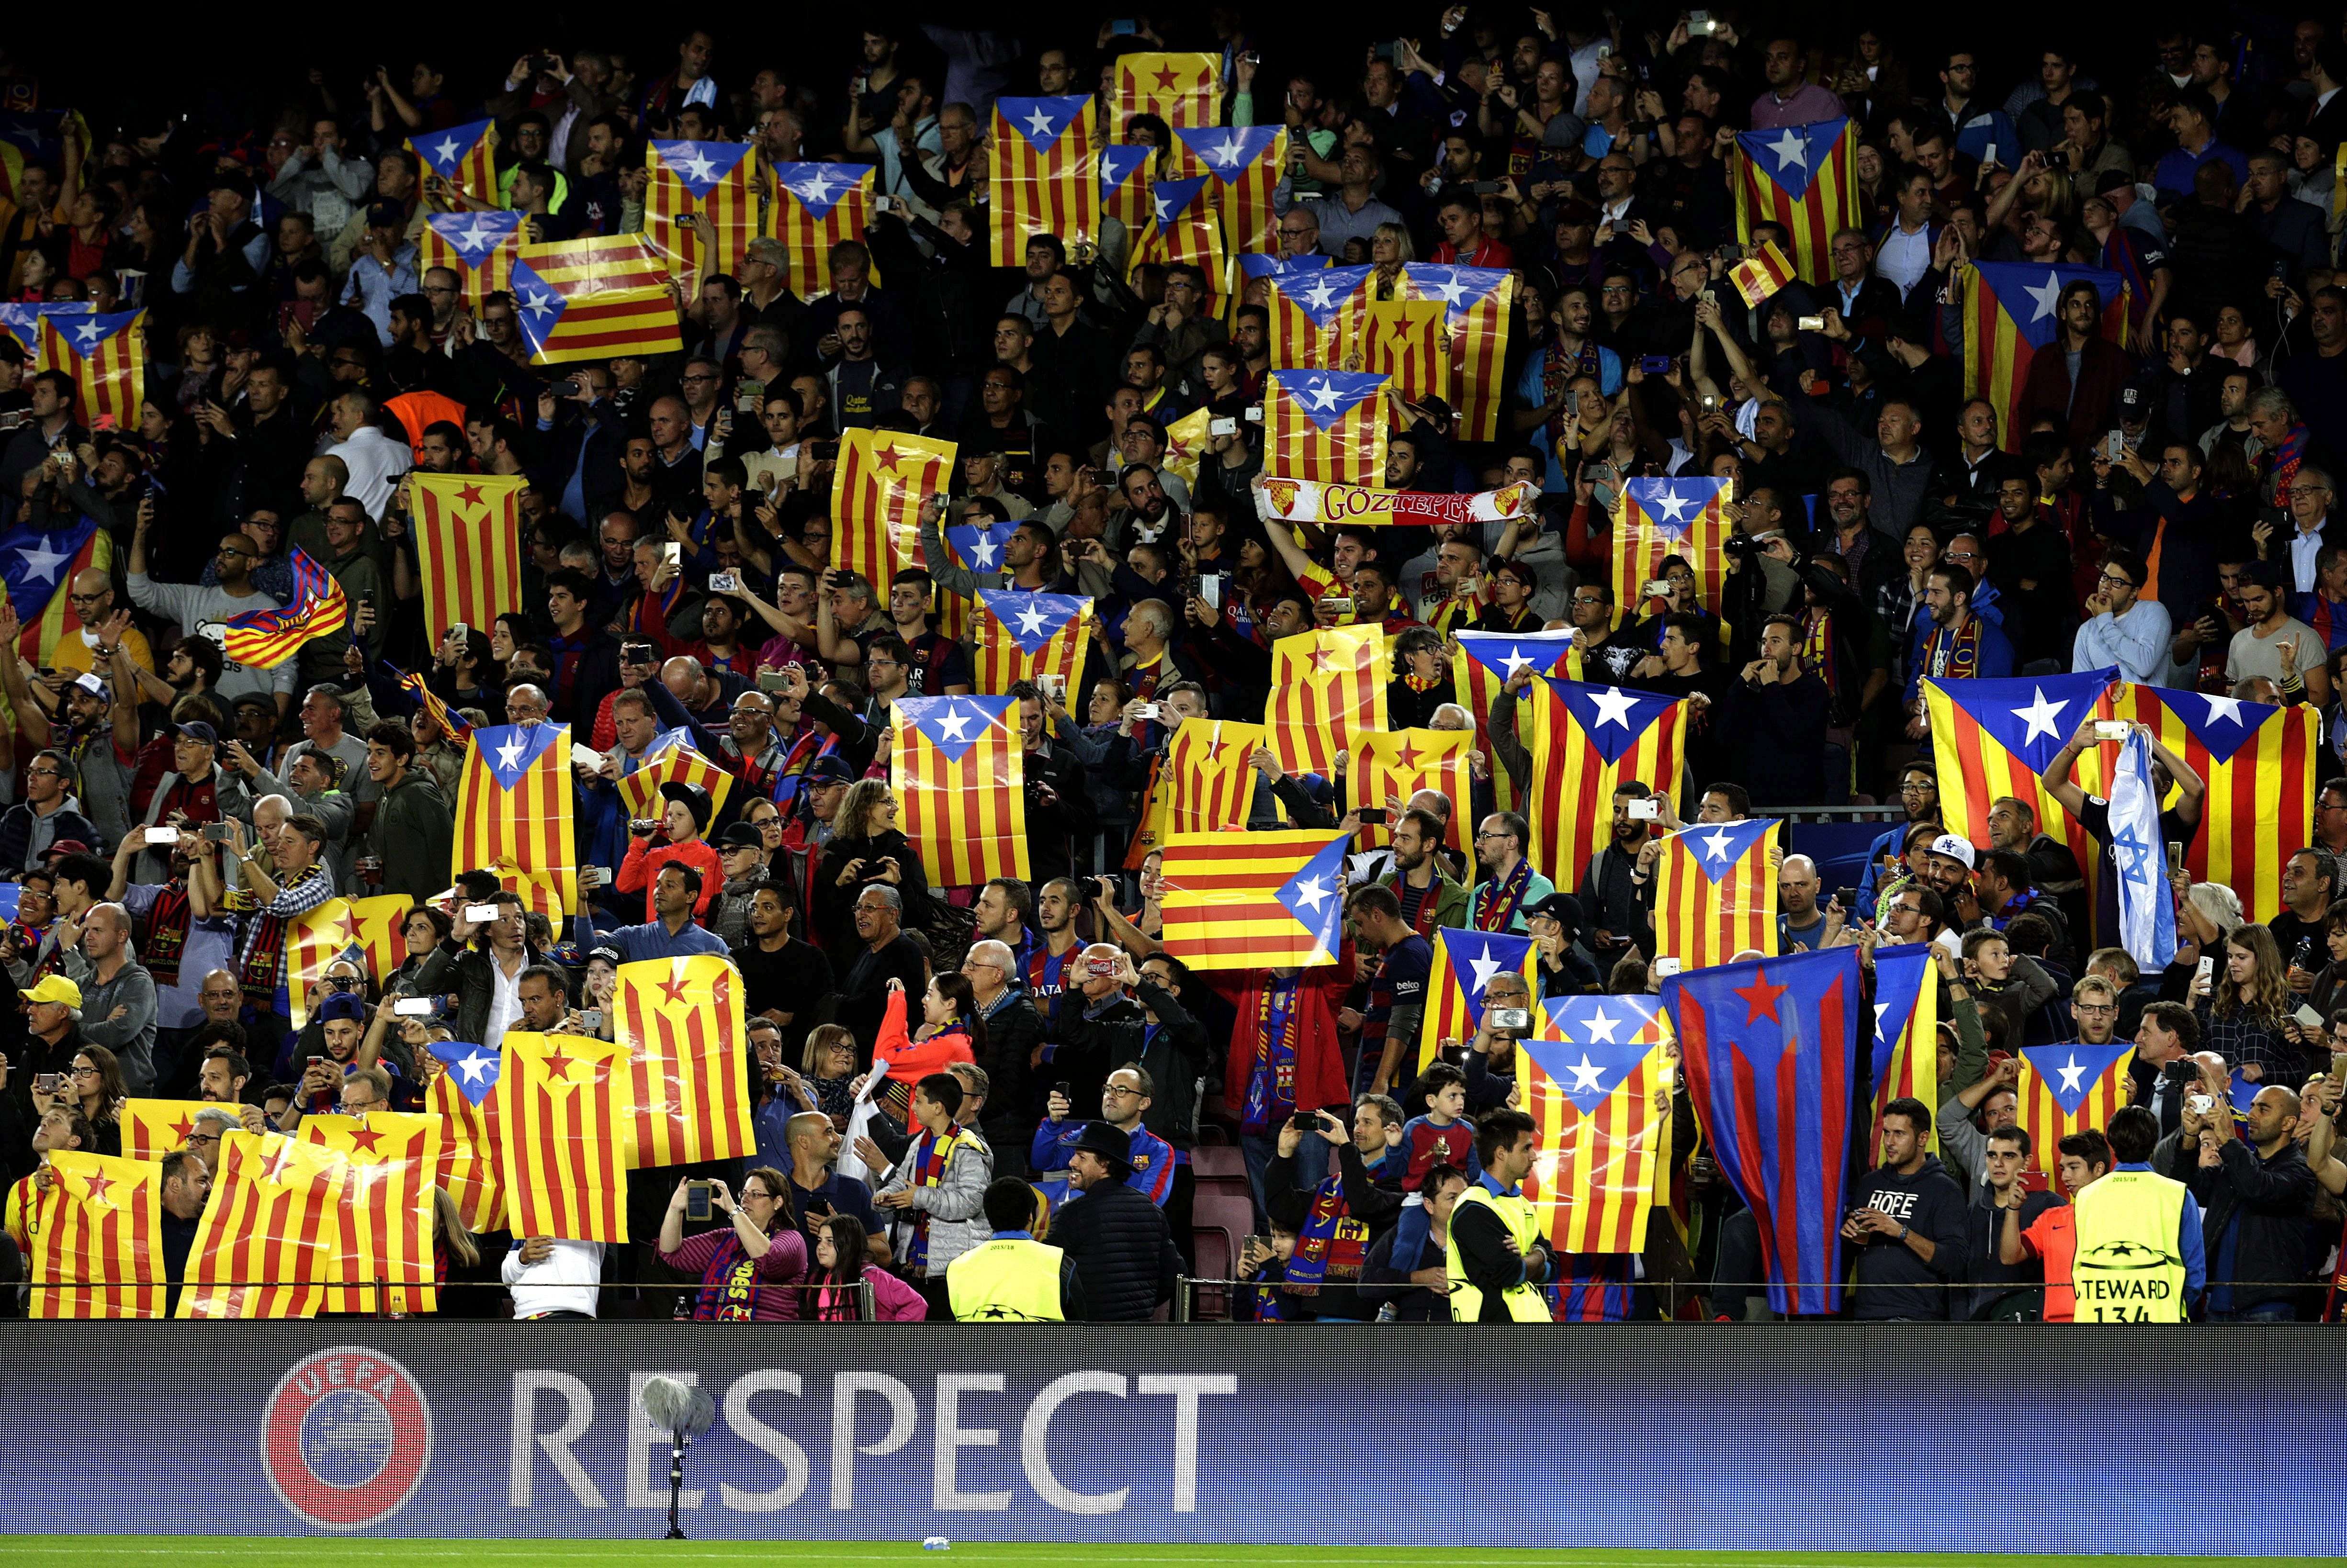 El Barça reafirma el apoyo al derecho a decidir